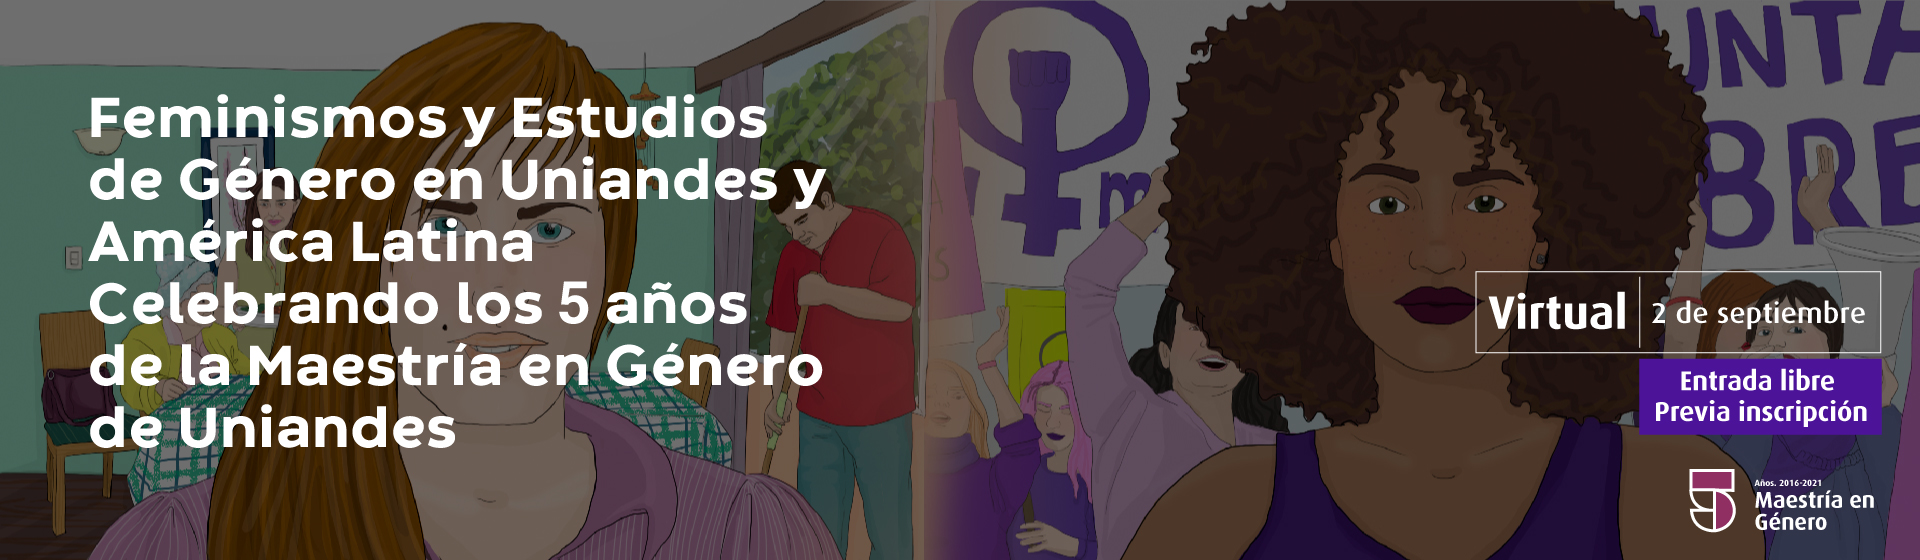 Feminismos y Estudios de Género en Uniandes y América Latina Celebrando los 5 años de la Maestría en Género de Uniandes